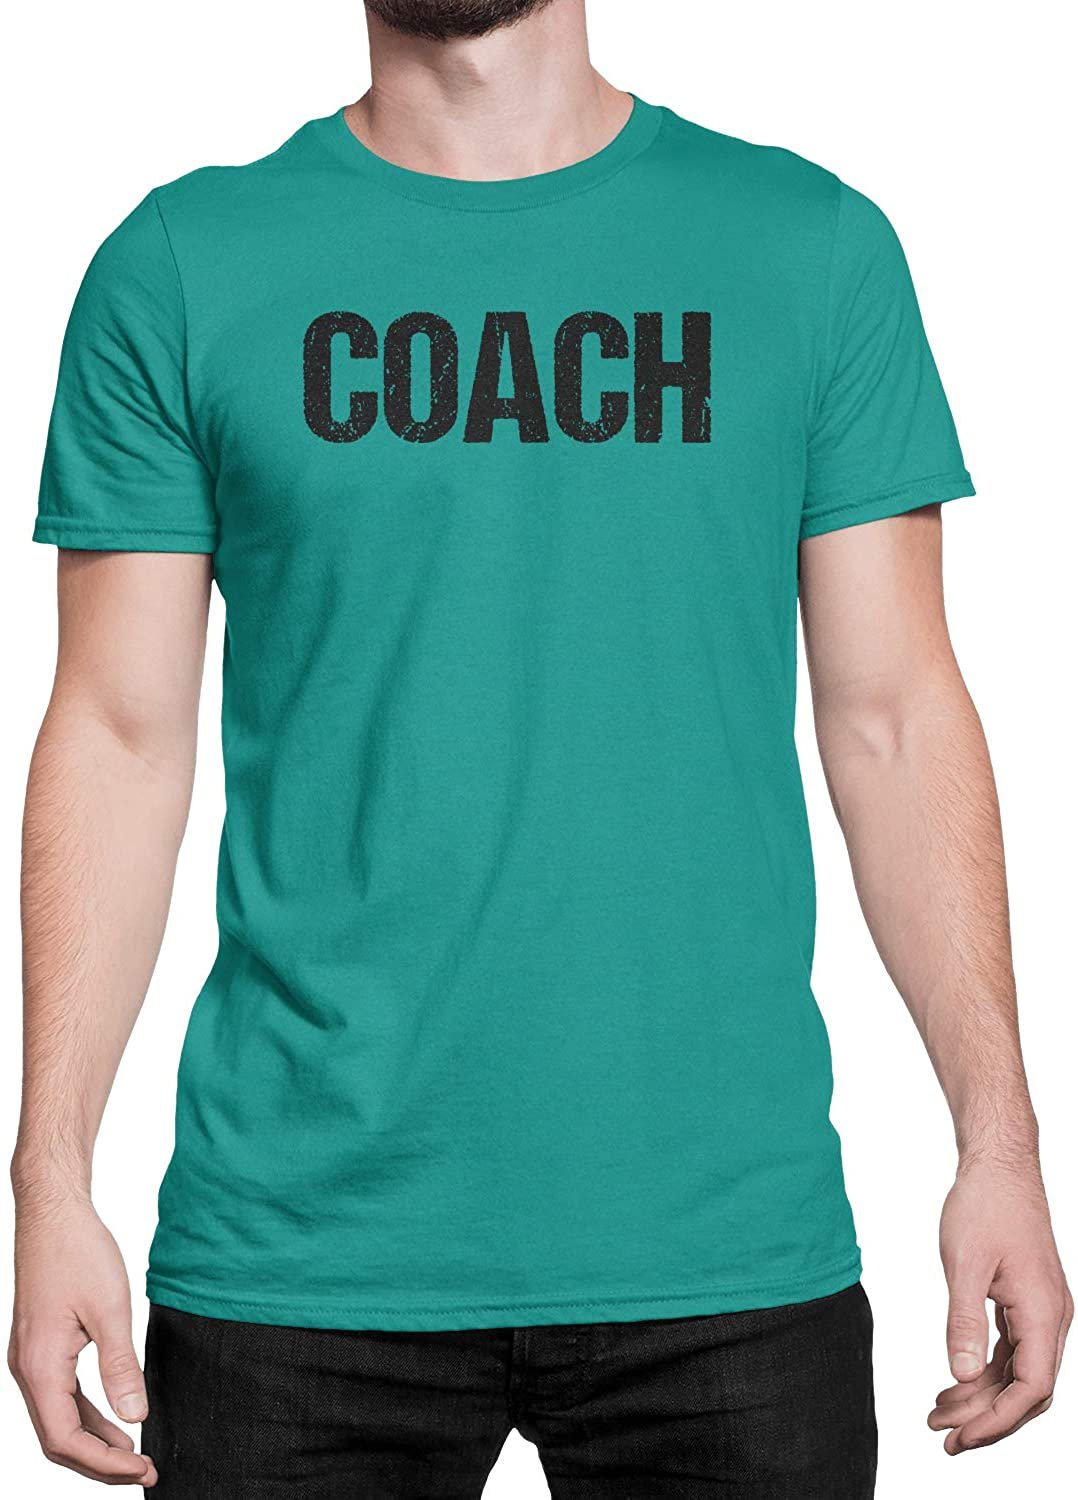 Coach T-Shirt Sport Coaching T-Shirt (Aqua &amp; Schwarz, Distressed)